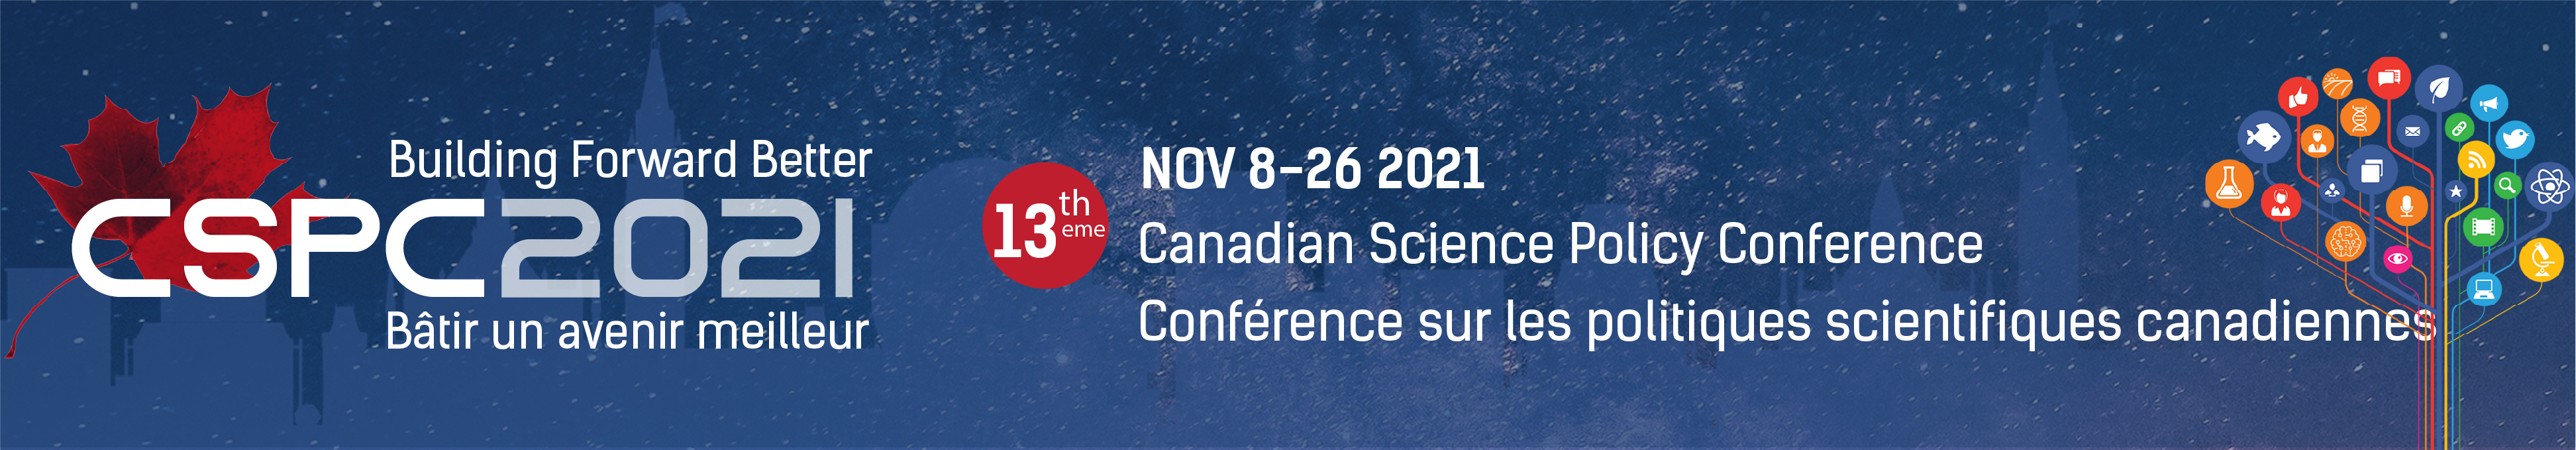 Bannière pour la conférence CSPC 2021 avec un fond de nuit étoilée et les travaux "Bâtir mieux pour l'avenir - 13e Conférence sur les politiques scientifiques canadiennes"